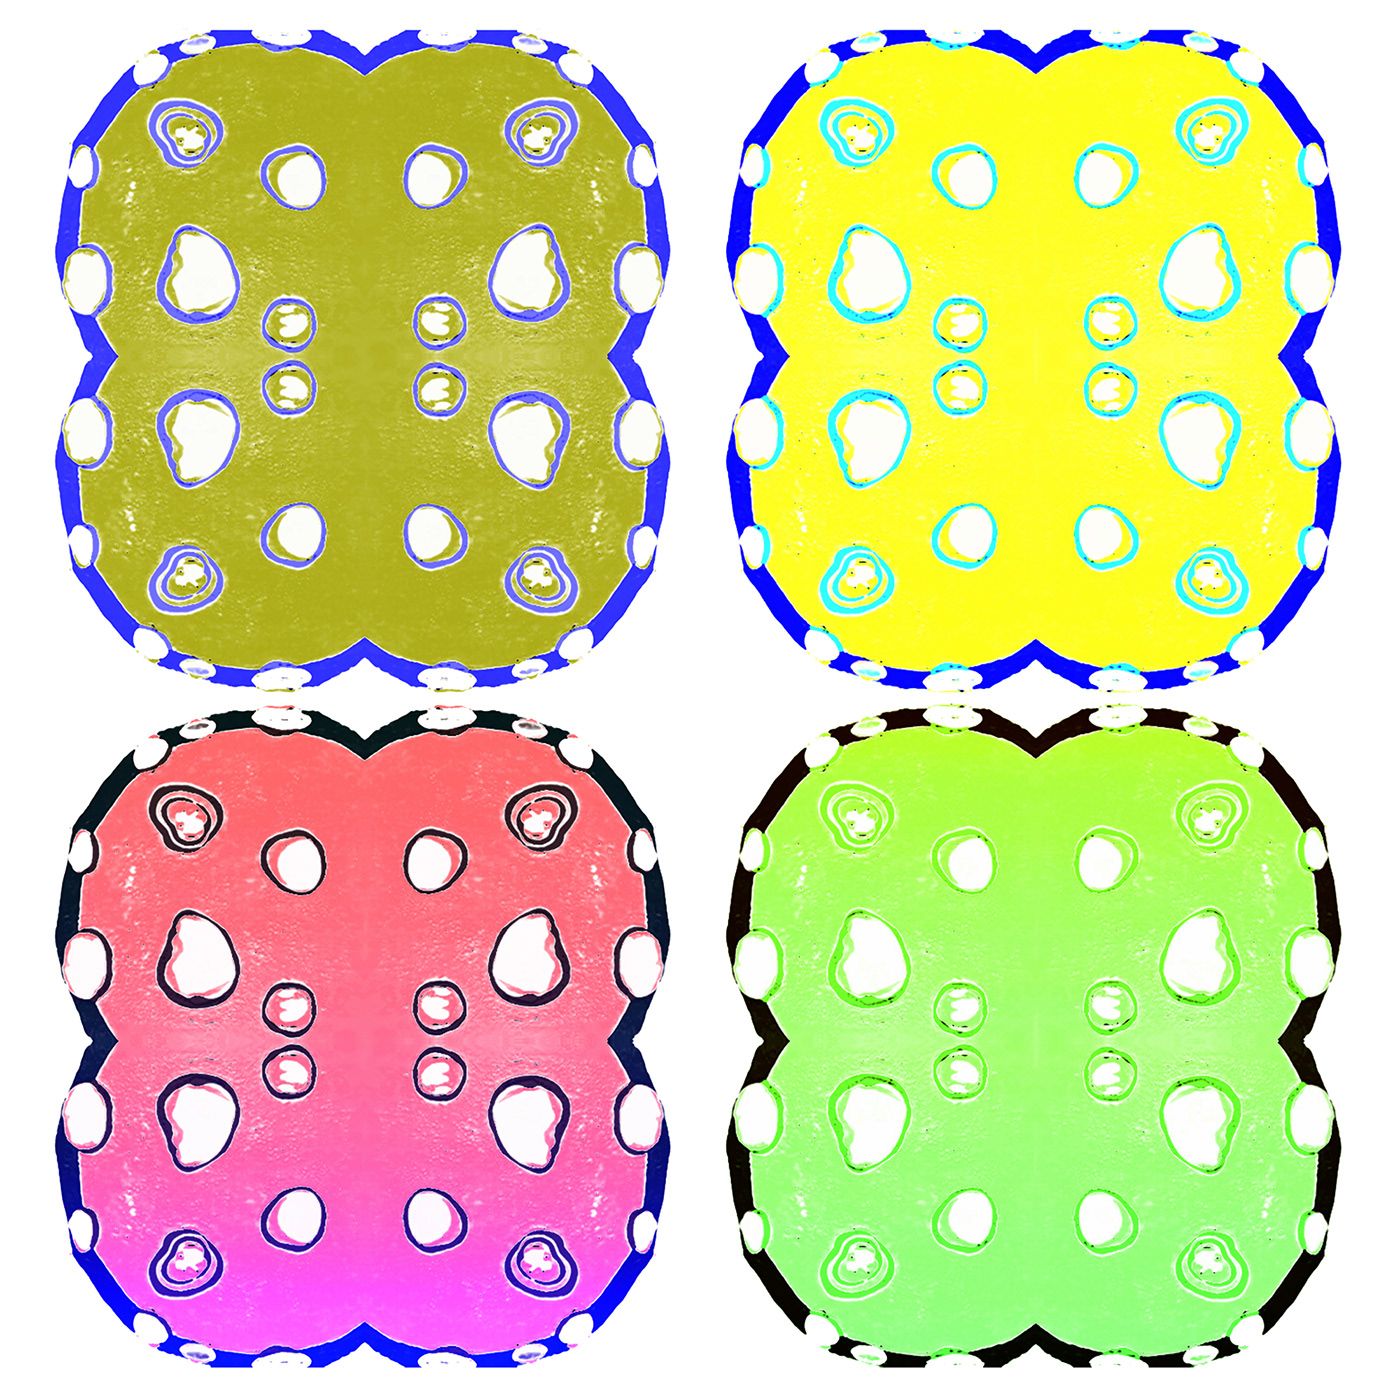 biologie dessin bulles abstract motif pattern imprimé Acidulé cellules fluorescent